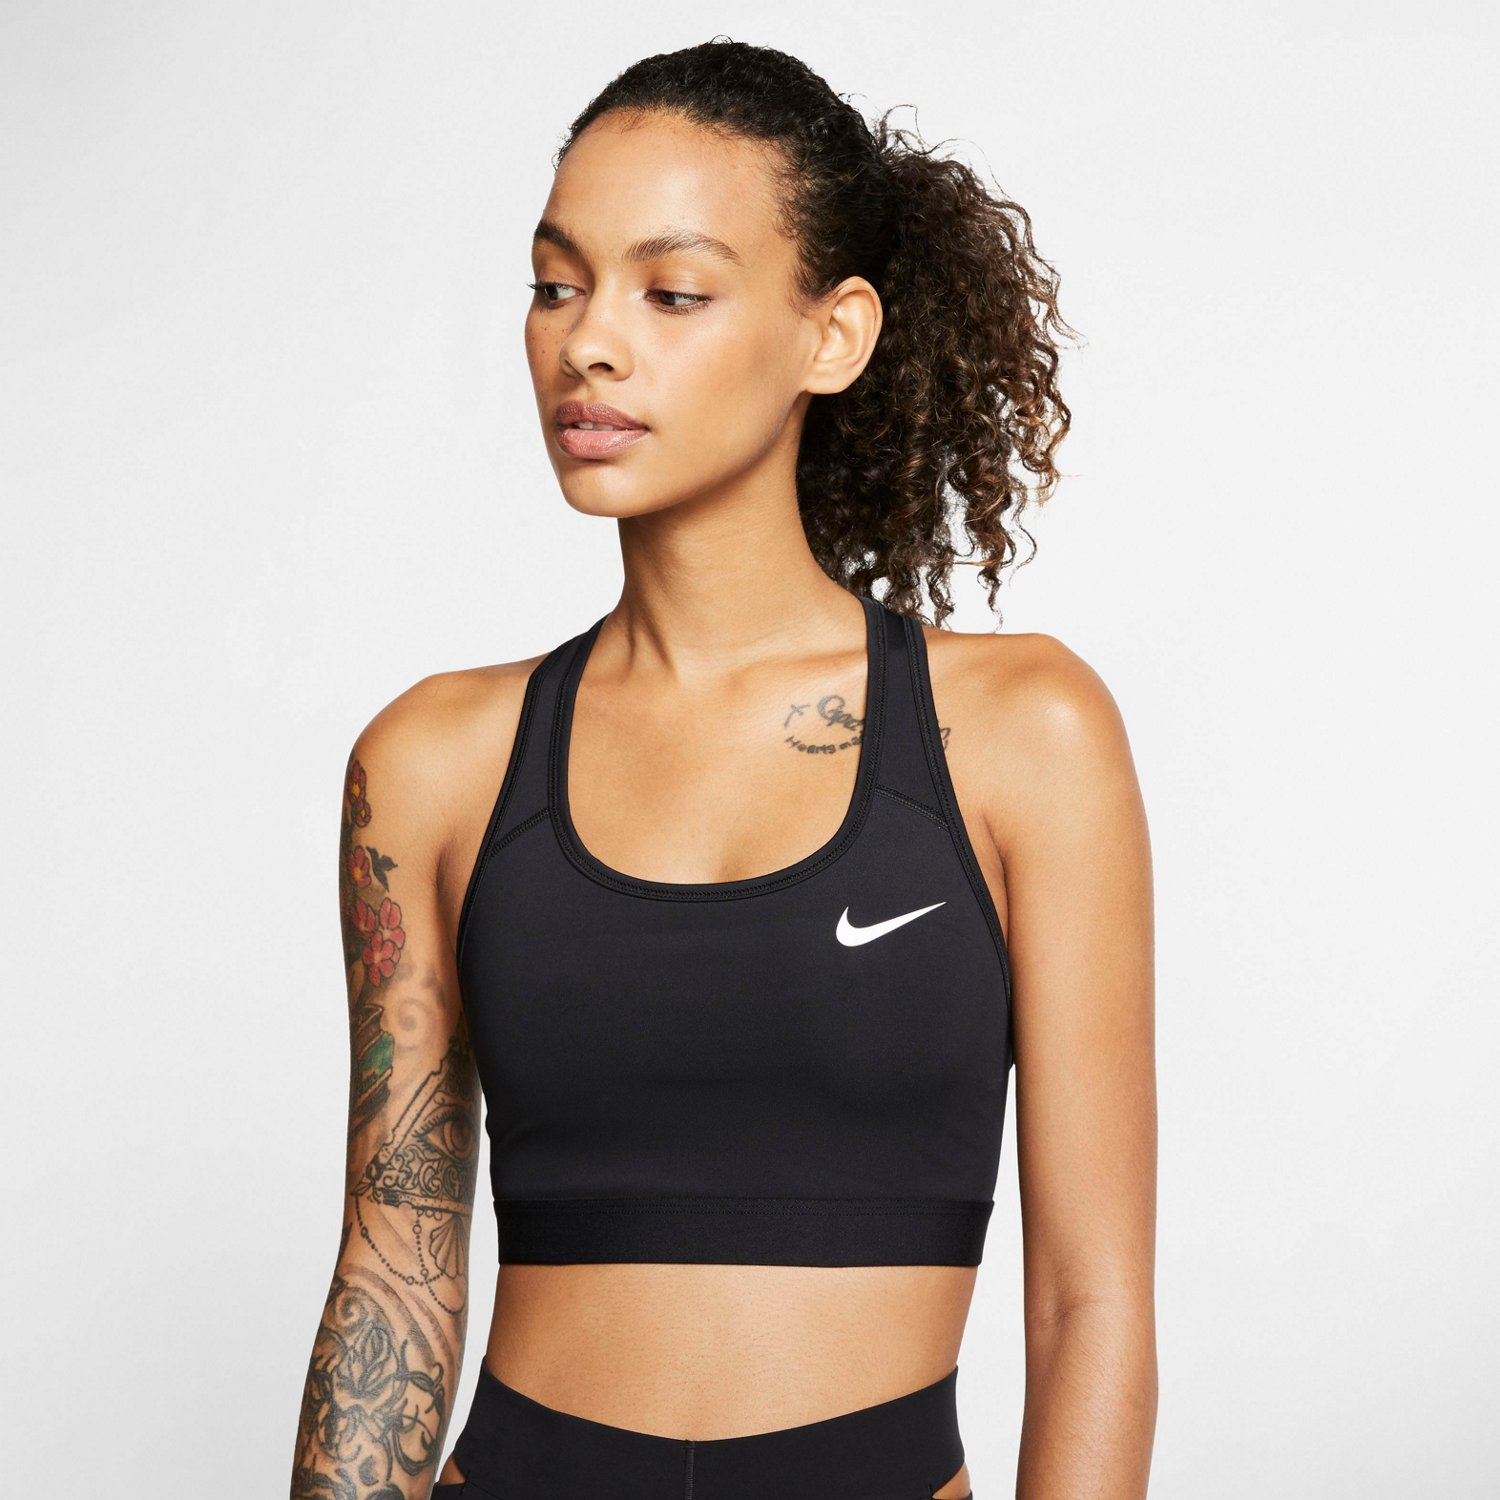 Women's, Nike Dri-FIT Swoosh Soft Tee Sports Bra